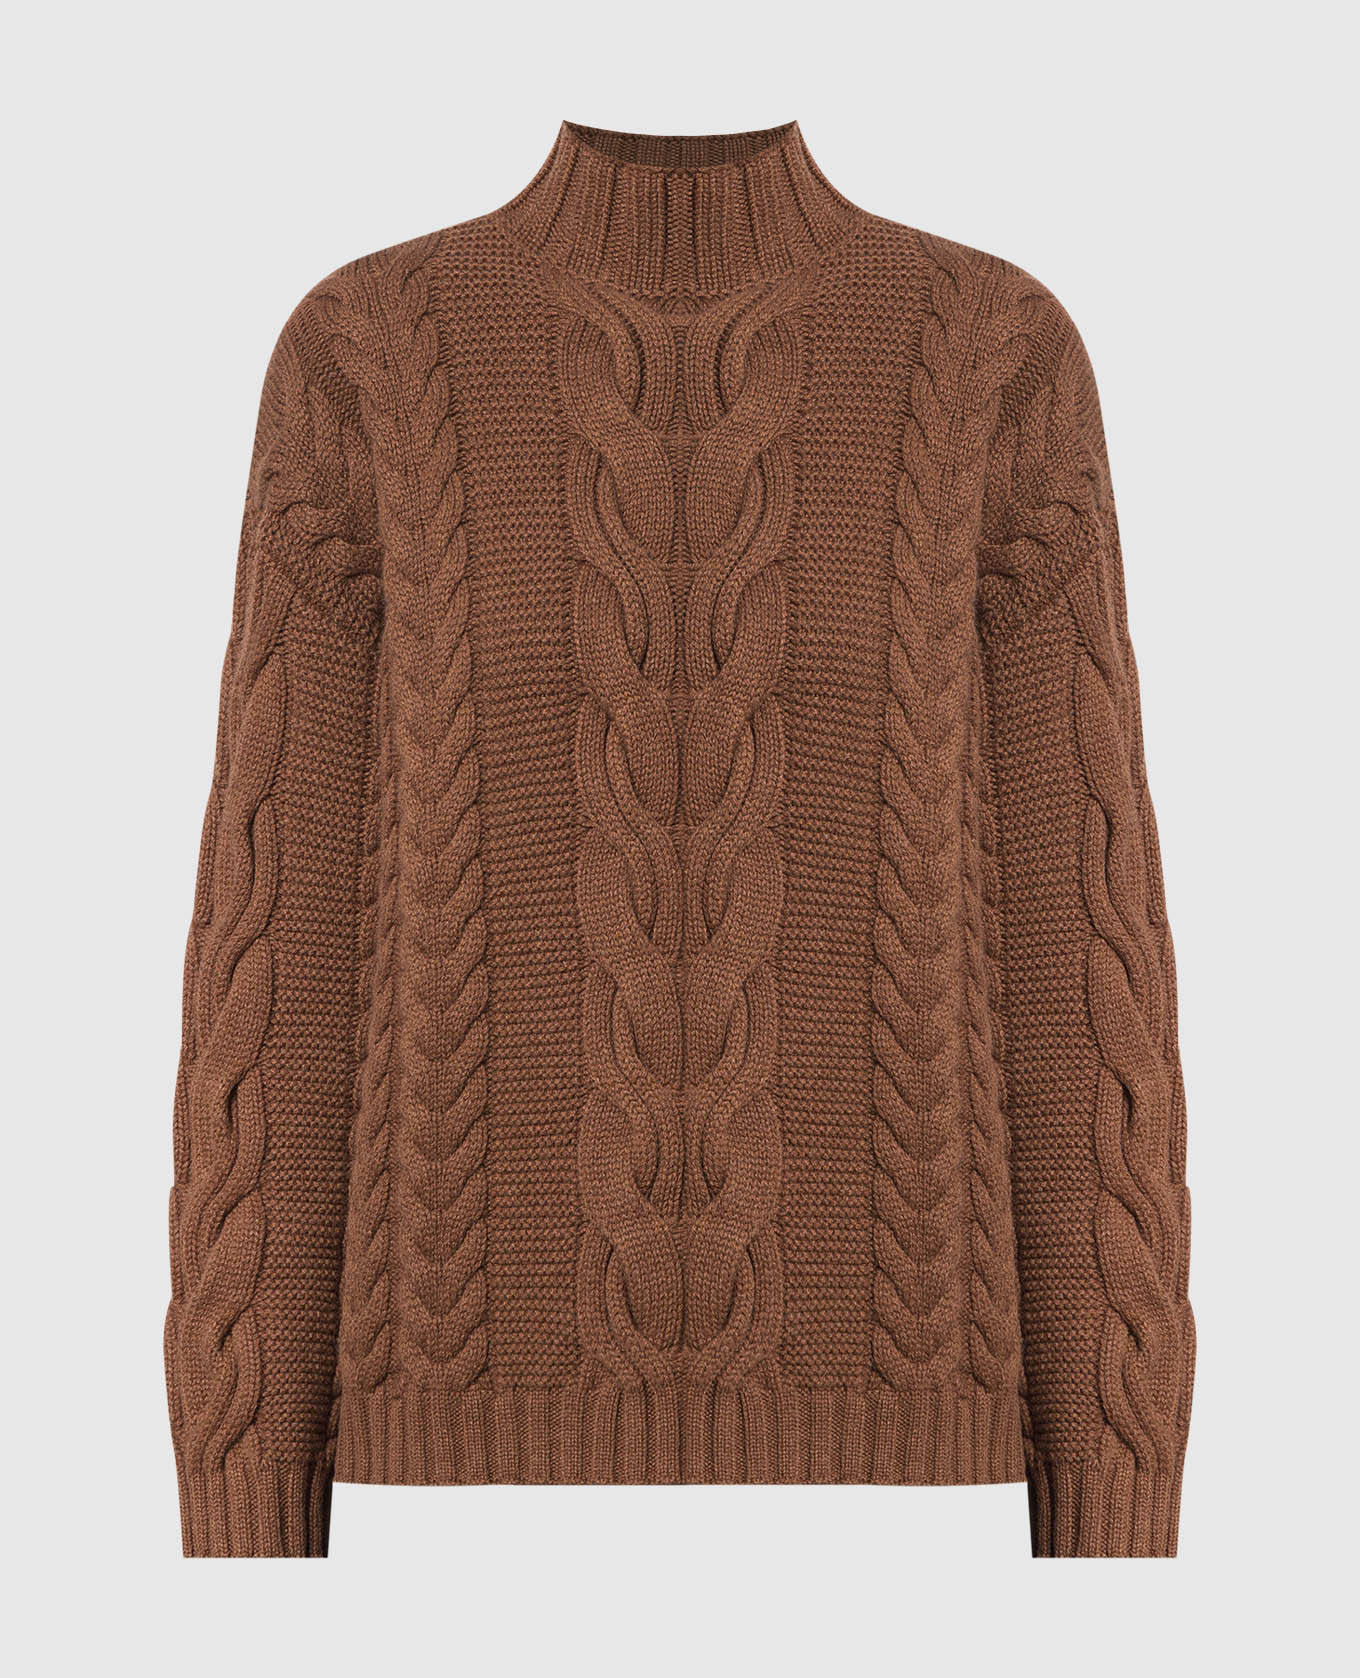 Коричневый свитер из кашемира в фактурный узор.